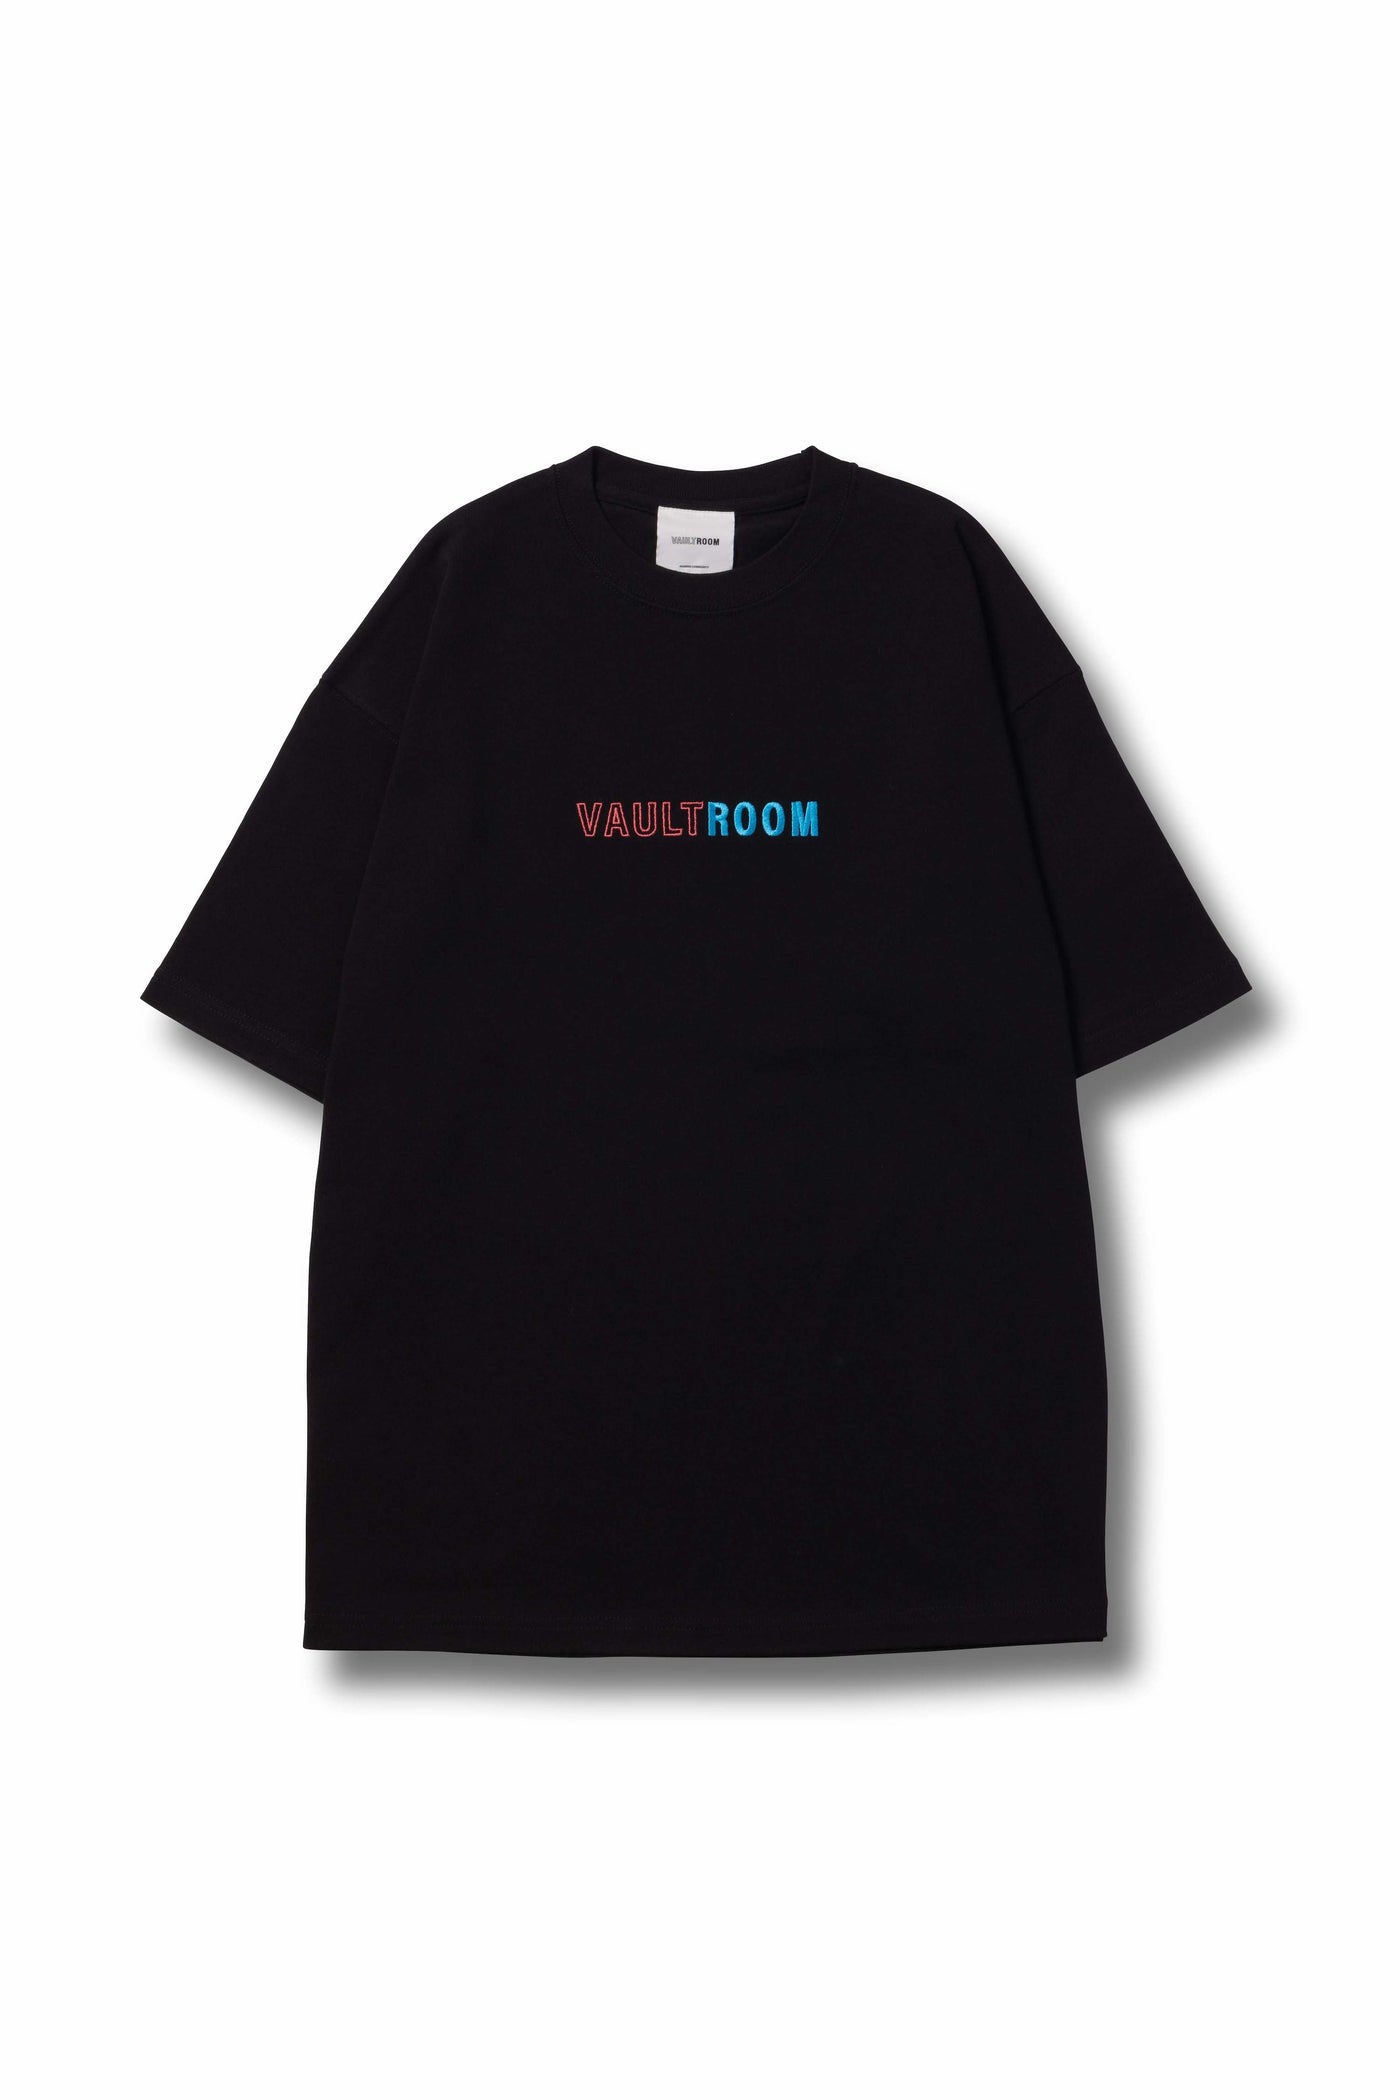 進撃の巨人VR × KARUBINACHO TEE / BLK M vaultroom - Tシャツ